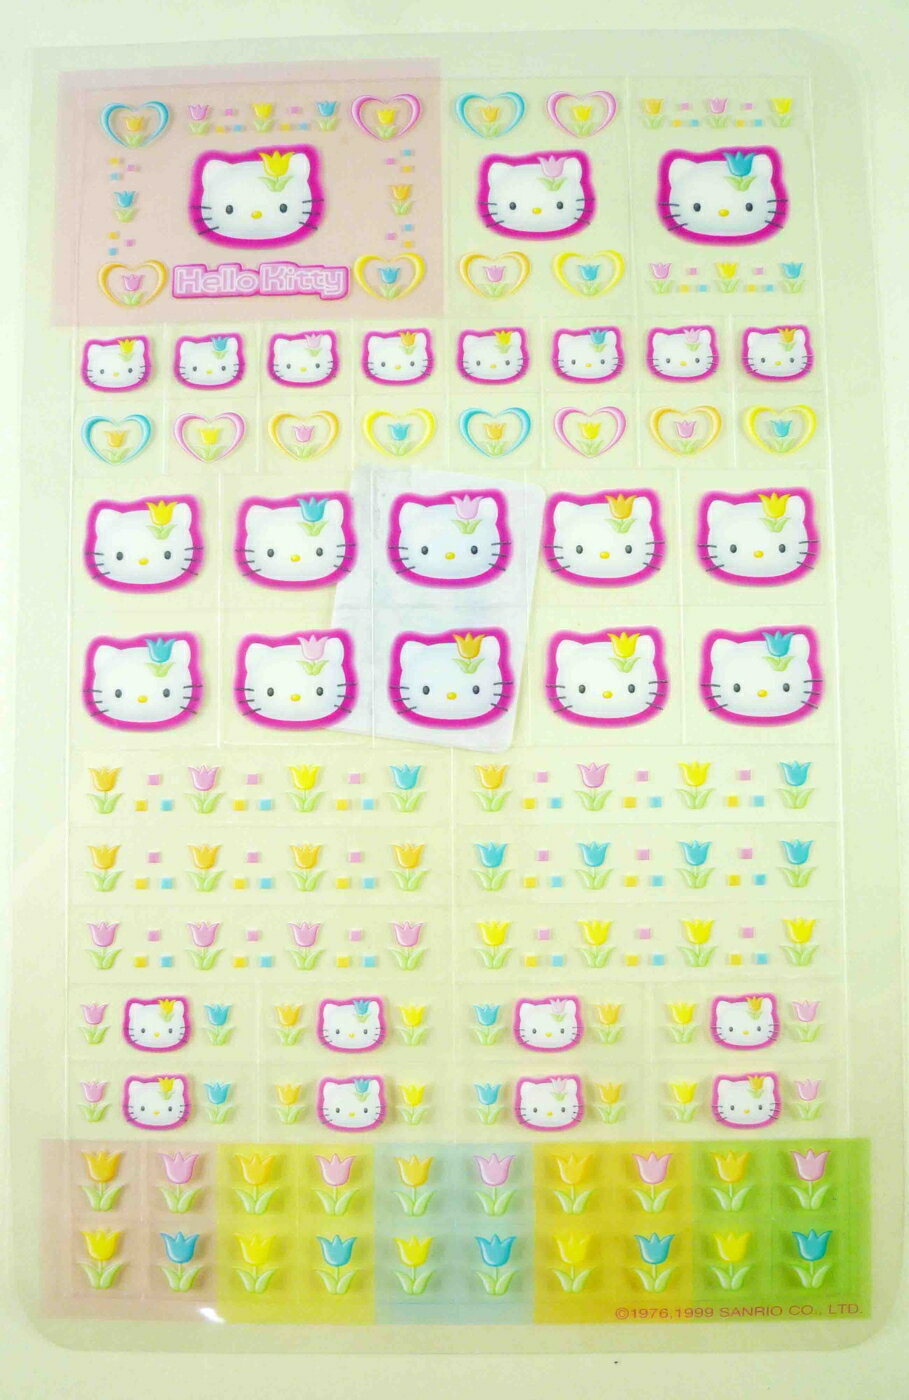 【震撼精品百貨】Hello Kitty 凱蒂貓 KITTY貼紙-透鬱金香 震撼日式精品百貨